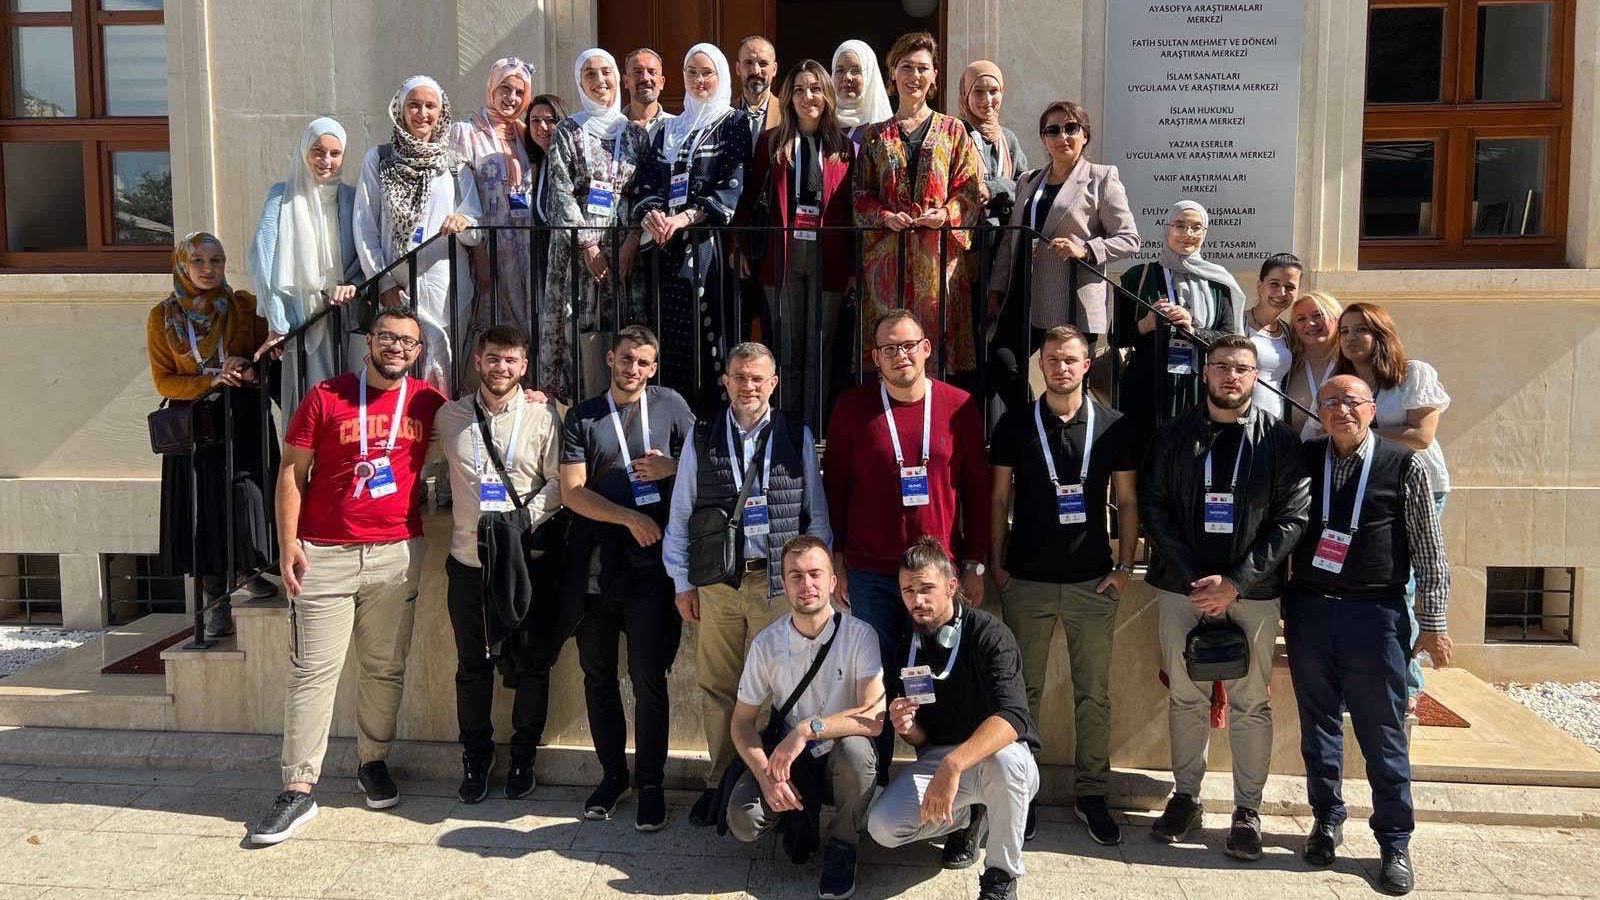 Vakufska direkcija Islamske zajednice u BiH organizirala je šestodnevni studijski boravak u Turskoj za 8 studenata i 8 studentica FIN-a 